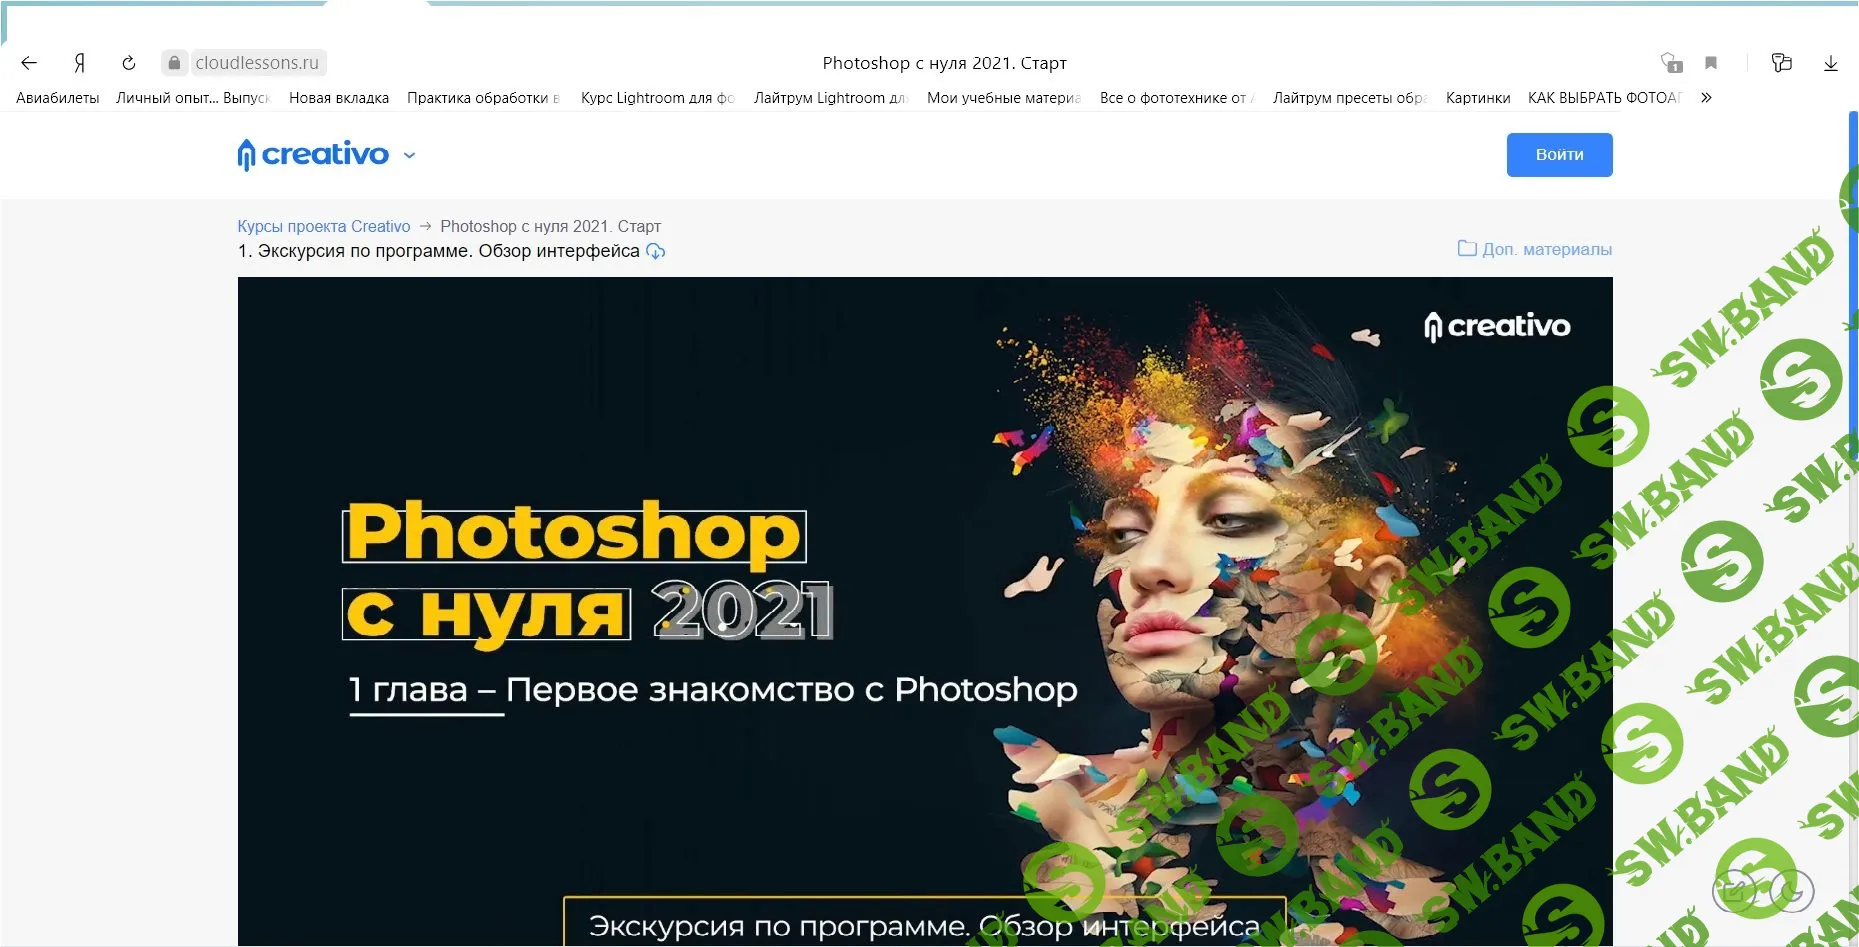 Обновите пожалуйста курс Оксаны Решетнёвой - Фотошоп с нуля 4.0 (2021)